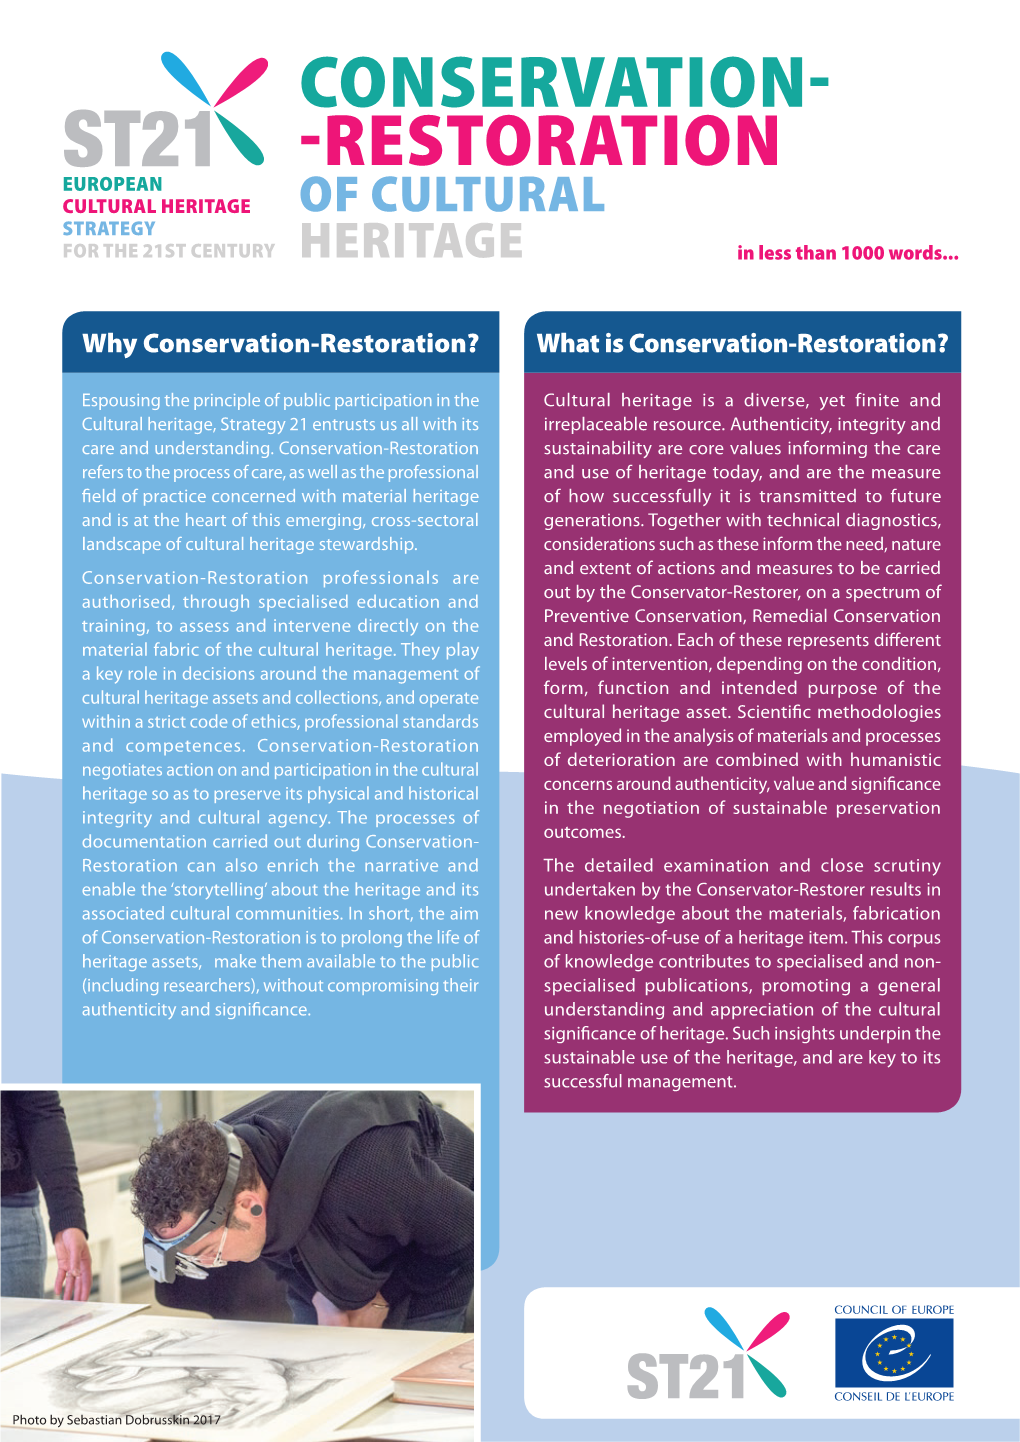 Conservation-Restoration of Cultural Heritage